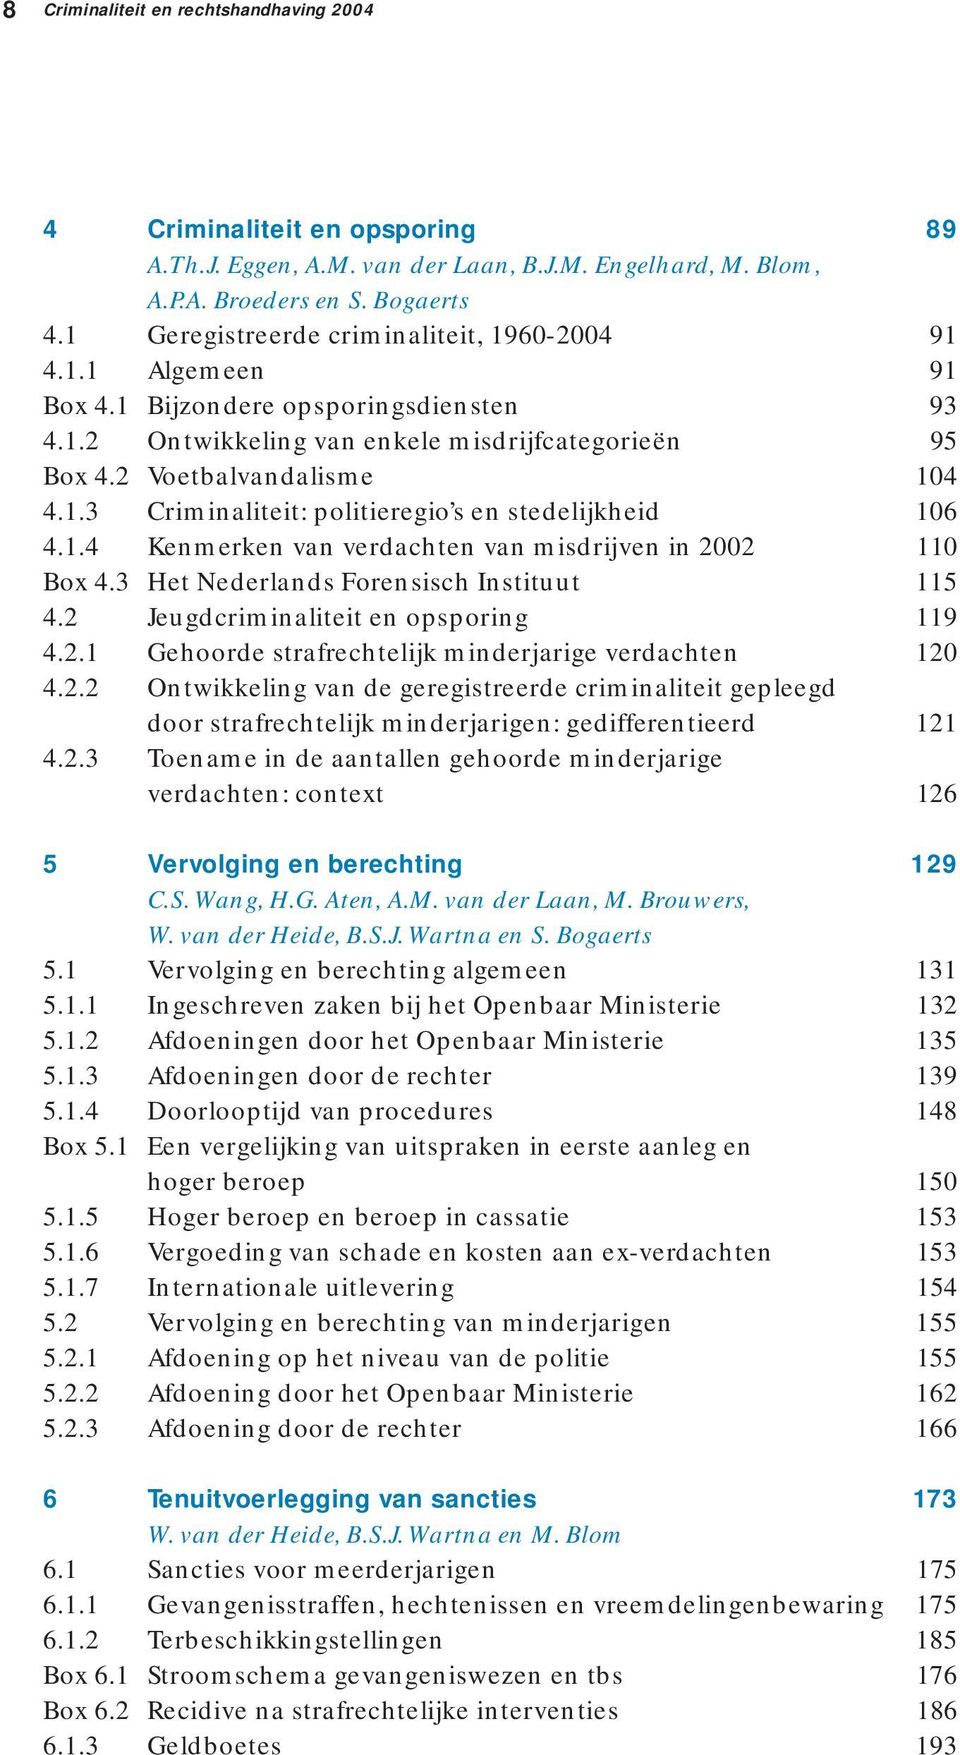 1.4 Kenmerken van verdachten van misdrijven in 2002 110 Box 4.3 Het Nederlands Forensisch Instituut 115 4.2 Jeugdcriminaliteit en opsporing 119 4.2.1 Gehoorde strafrechtelijk minderjarige verdachten 120 4.